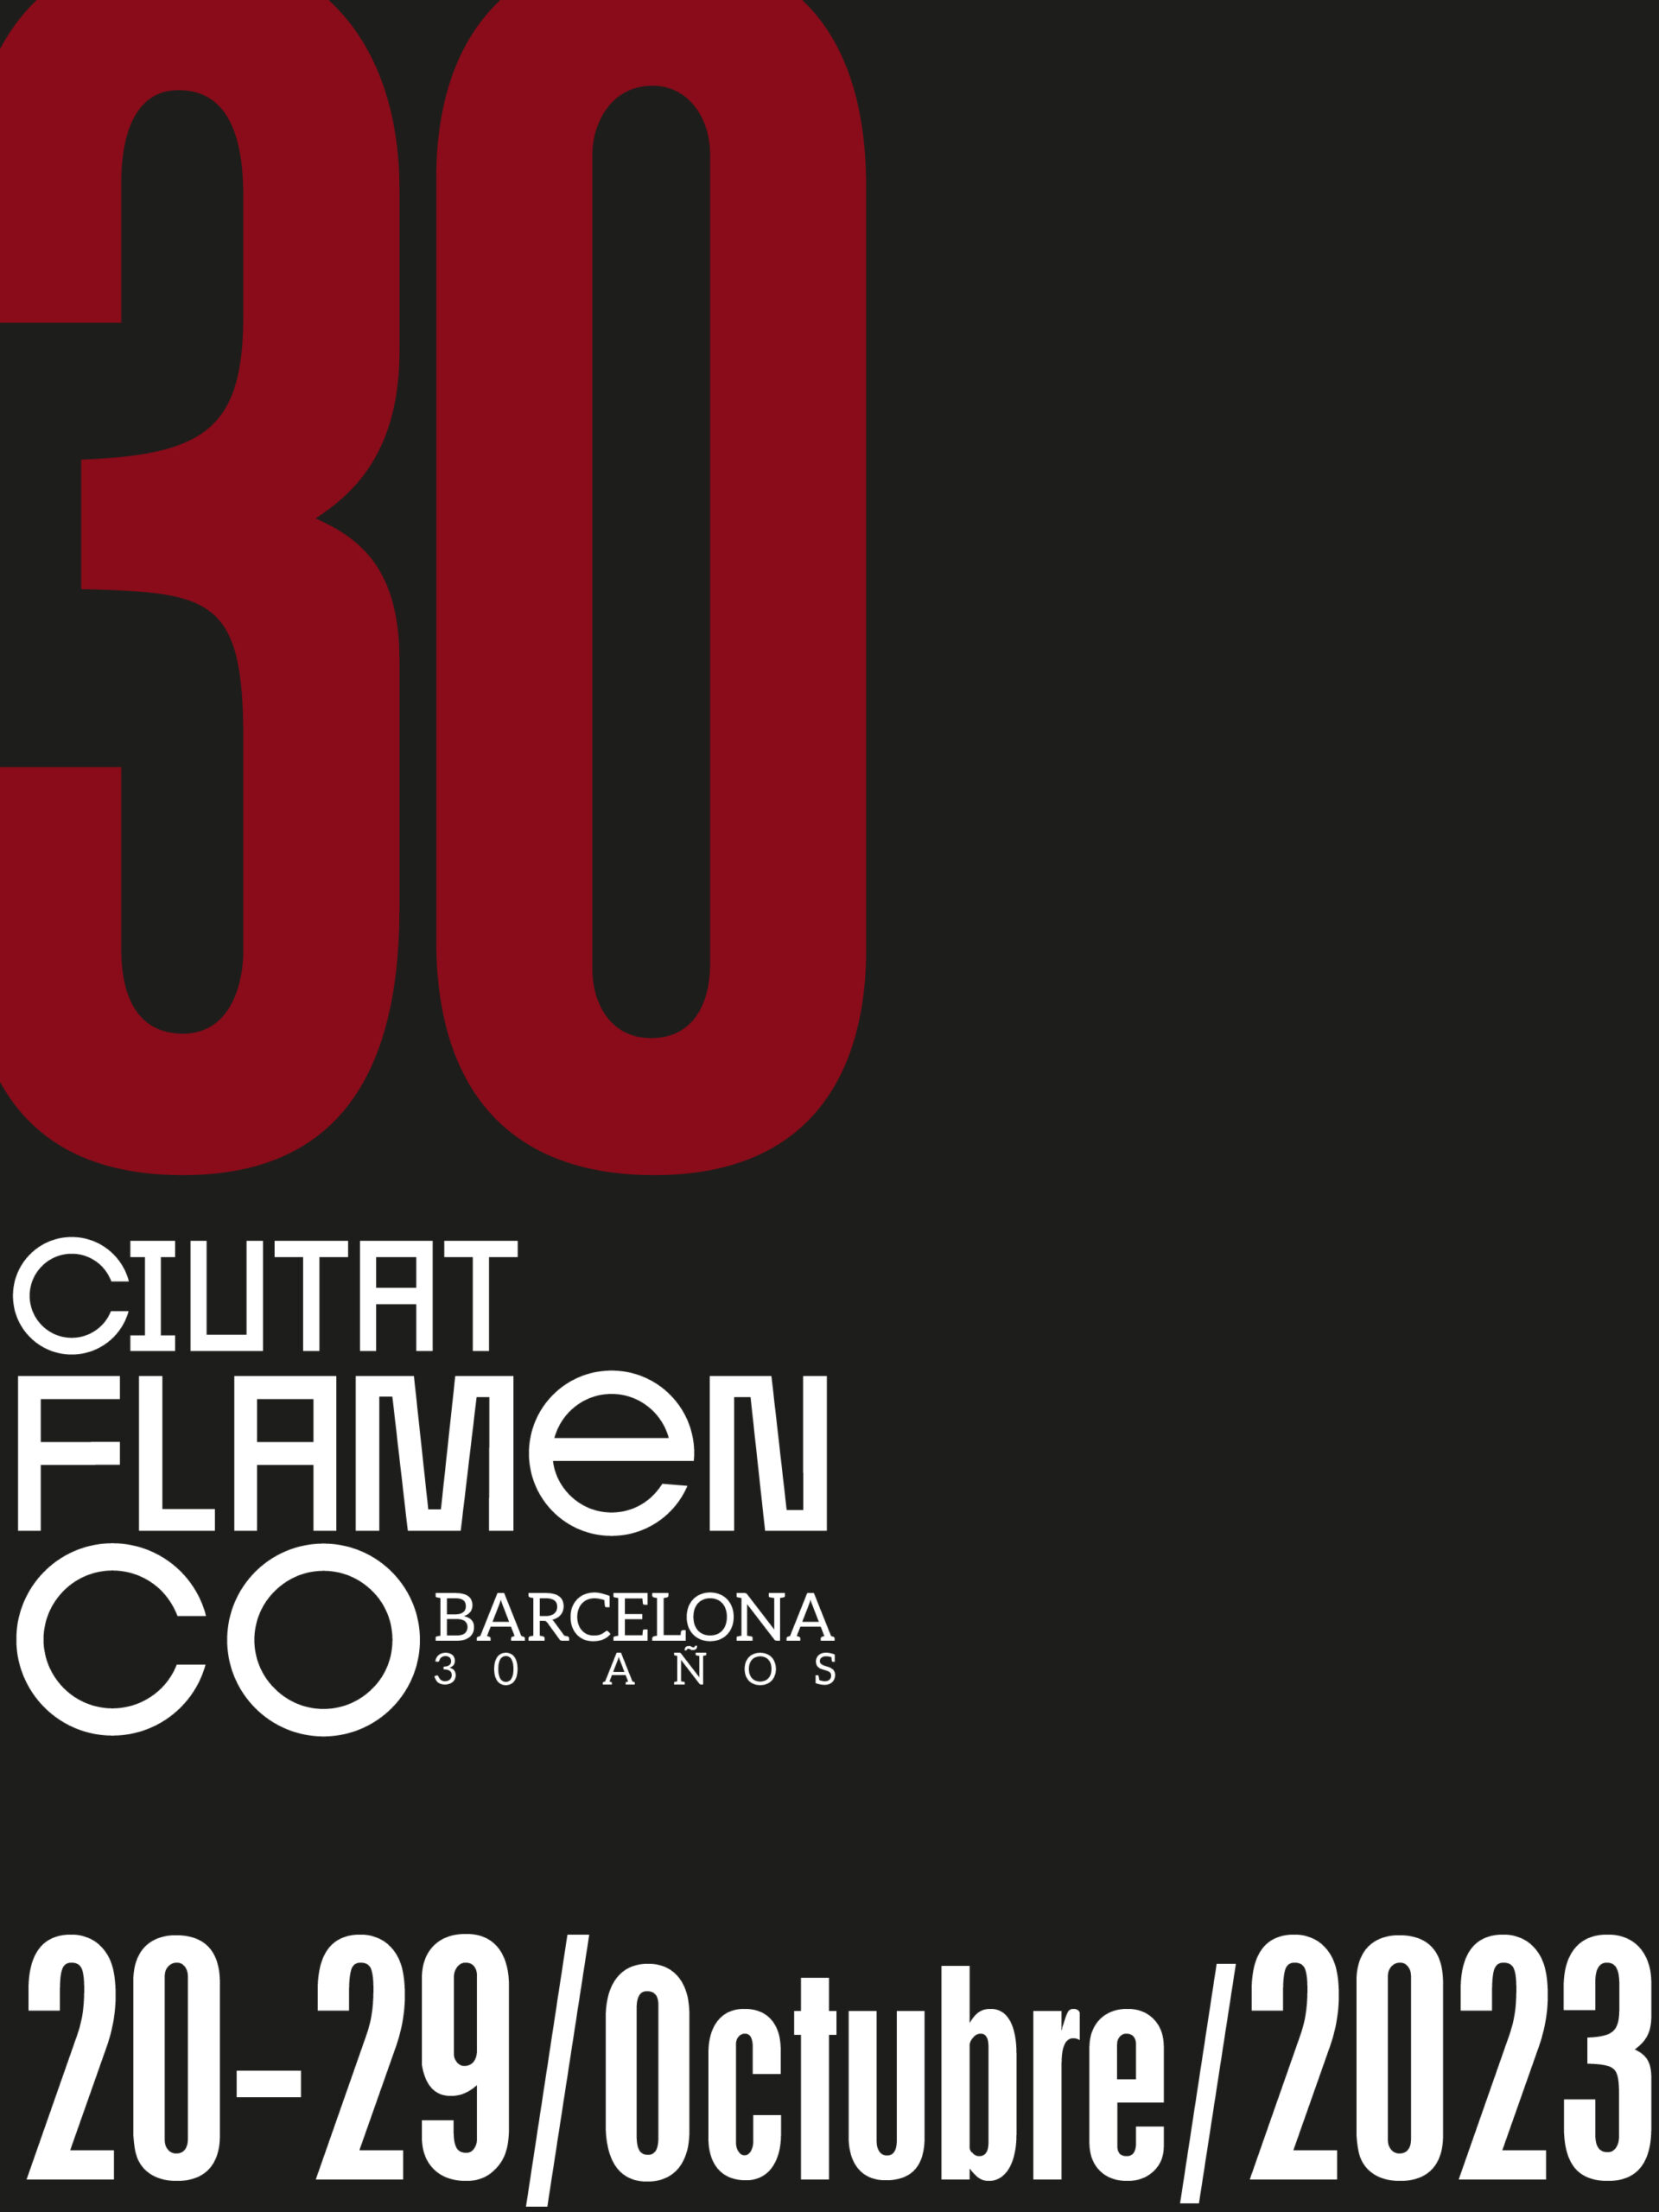 Festival Ciutat Flamenco cumple 30 años y lo celebra con un gran programa del 20 al 29 de octubre